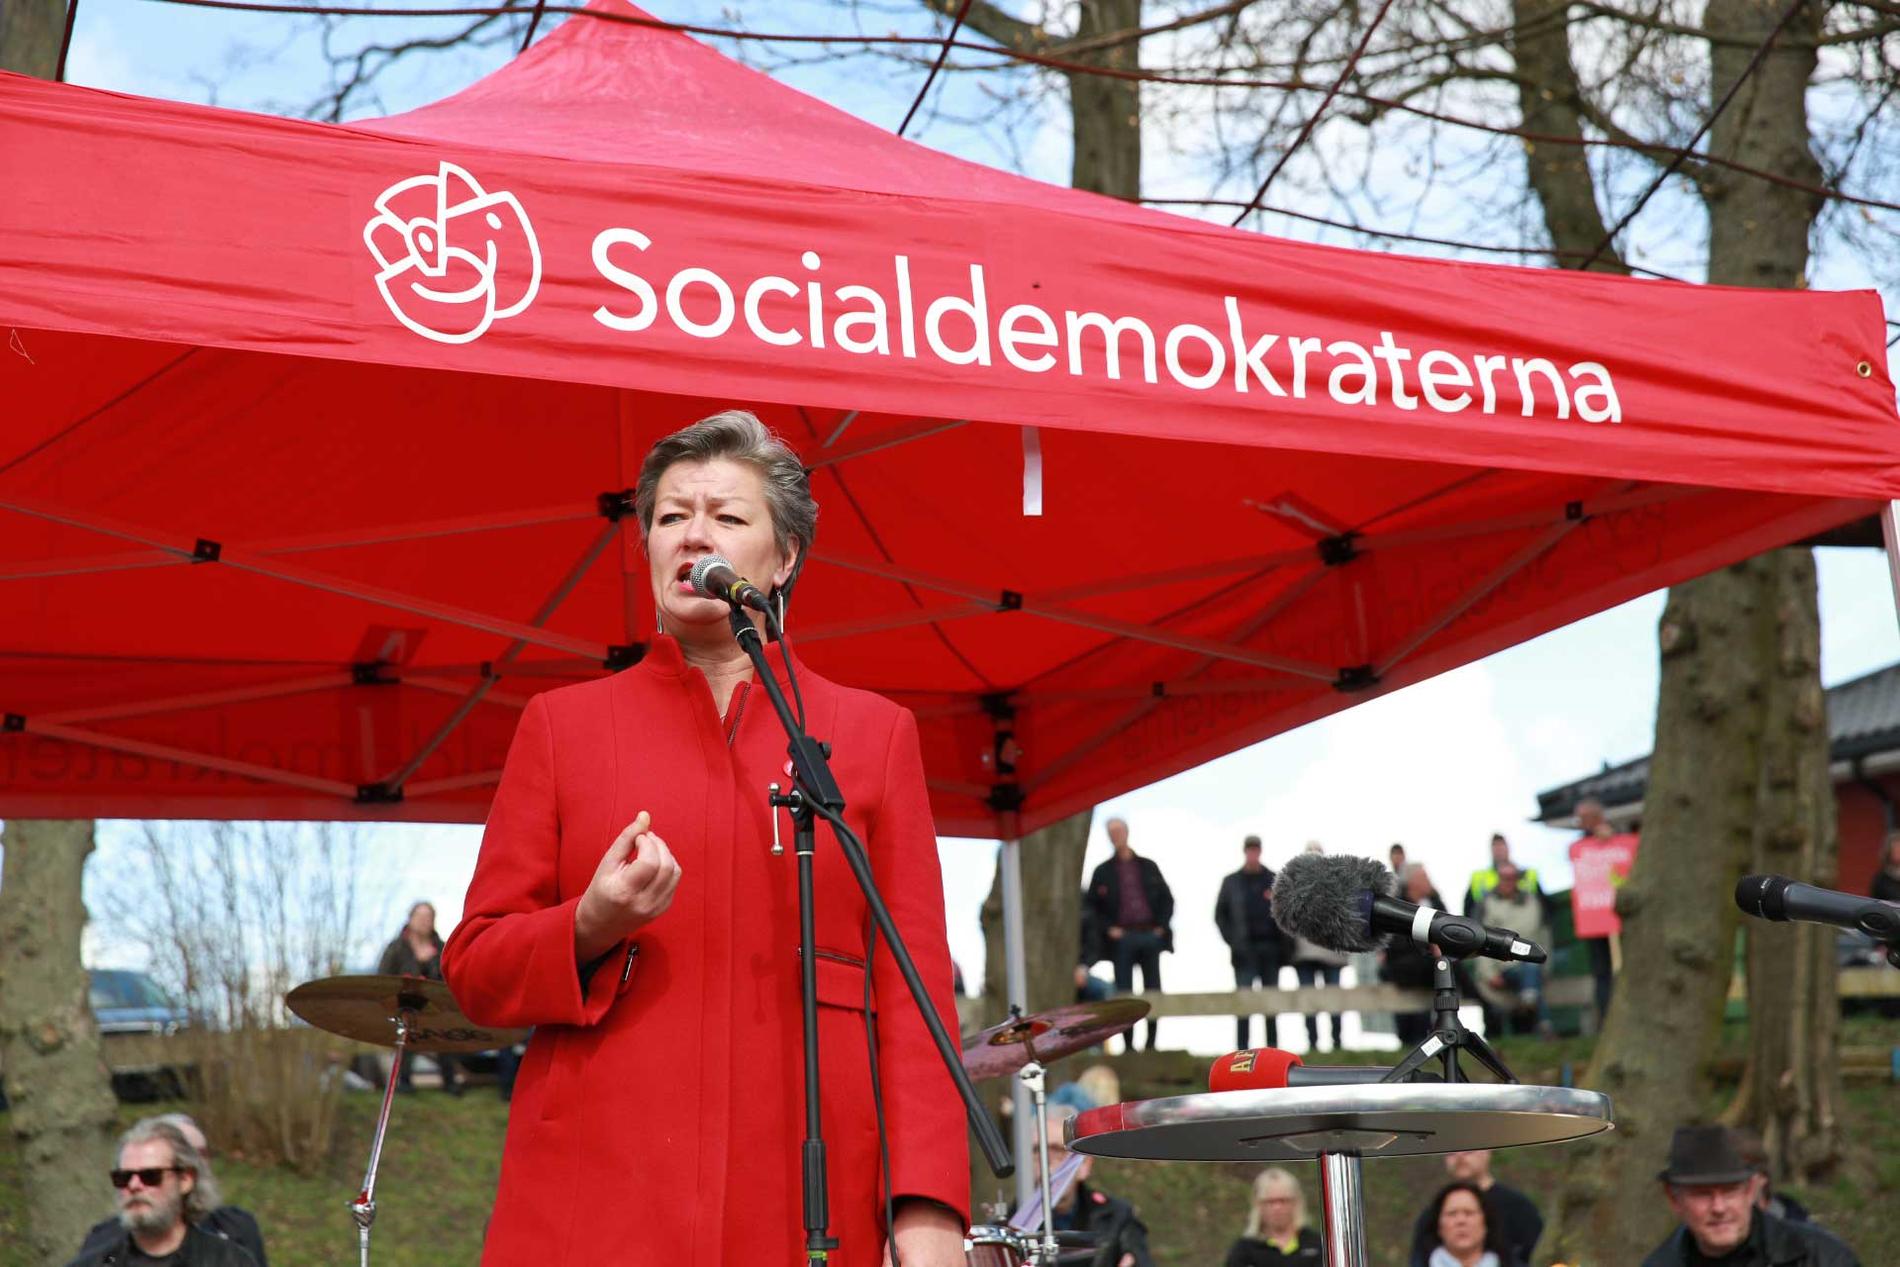 Arbetsmarknadsminister Ylva Johansson (S) höll tal under manifestationen: ”Som en blixt från en klar himmel vill man lägga ner en välfungerande, lönsam verksamhet”, sa hon bland annat.